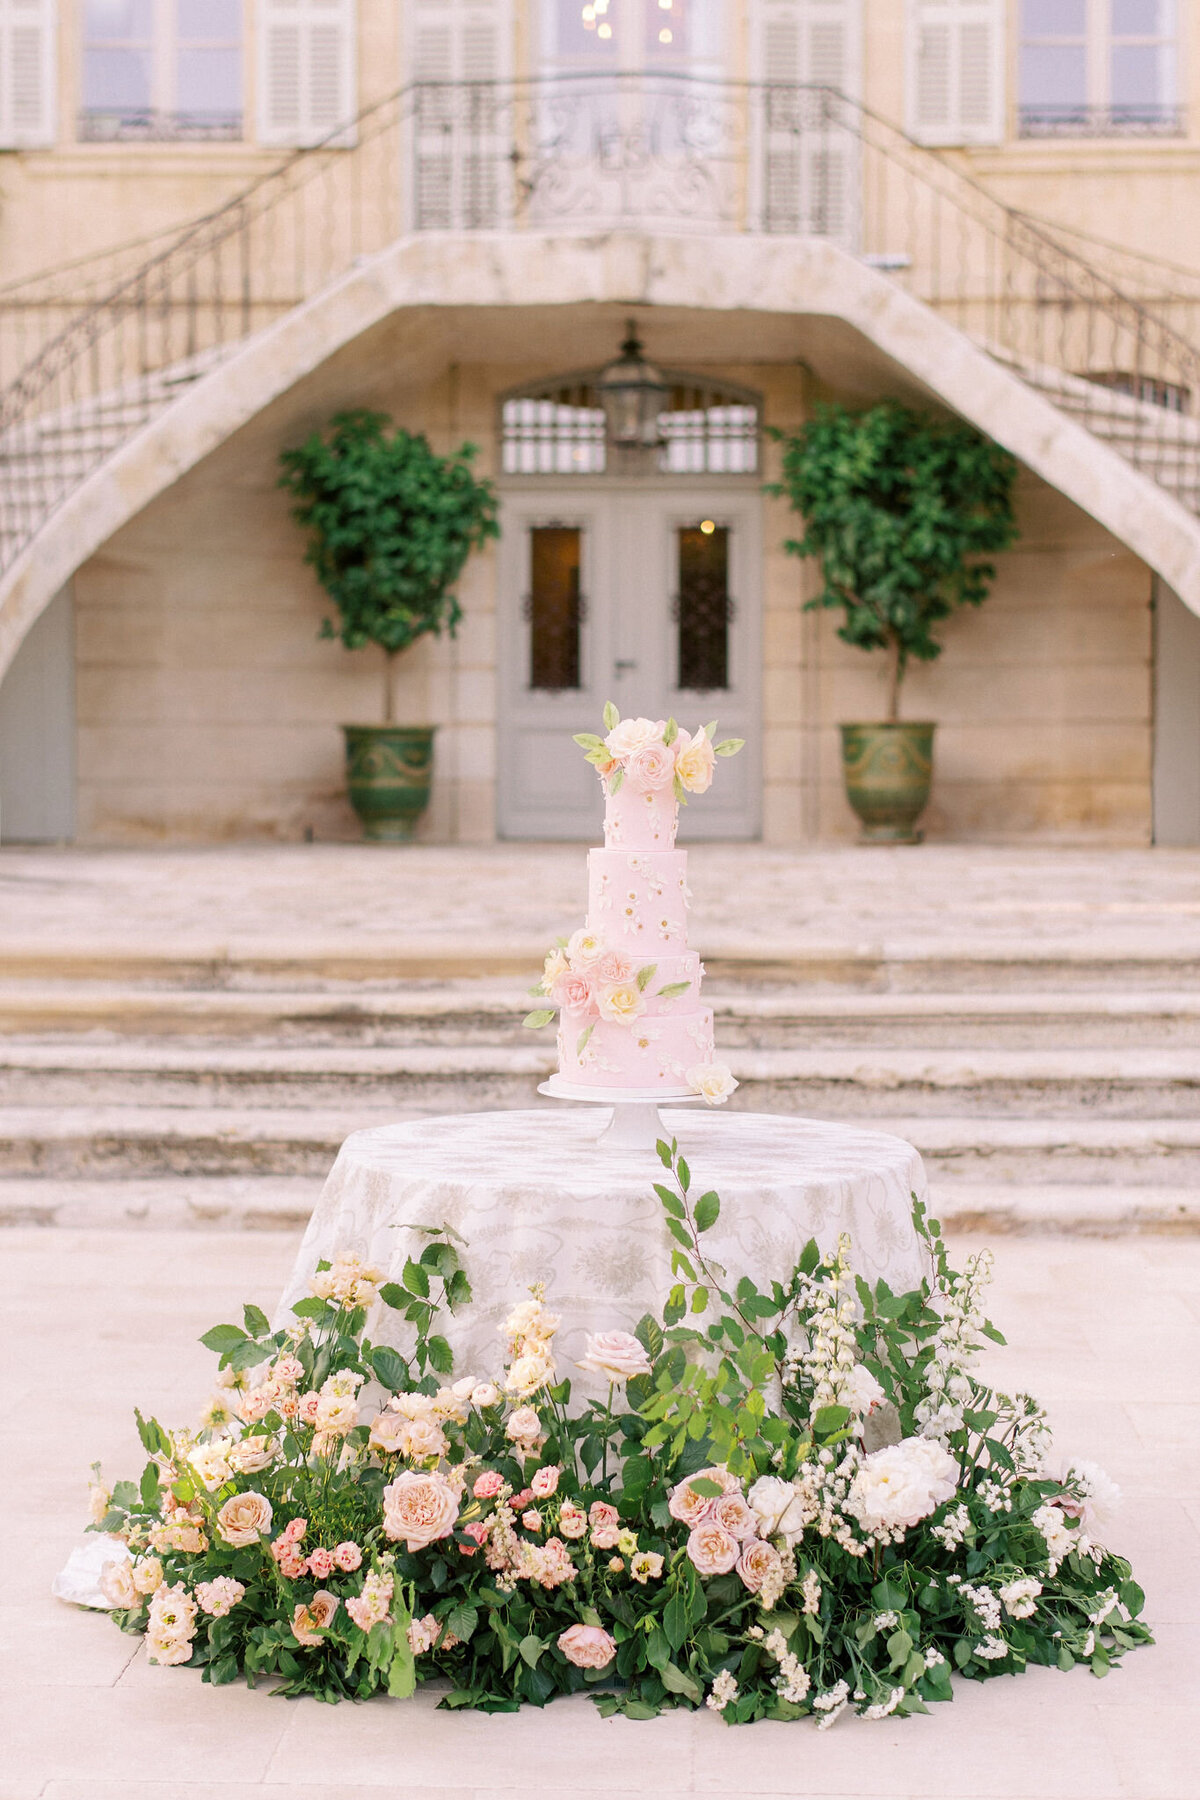 Chateau-de-Estoublon-wedding-florist-Floraison74